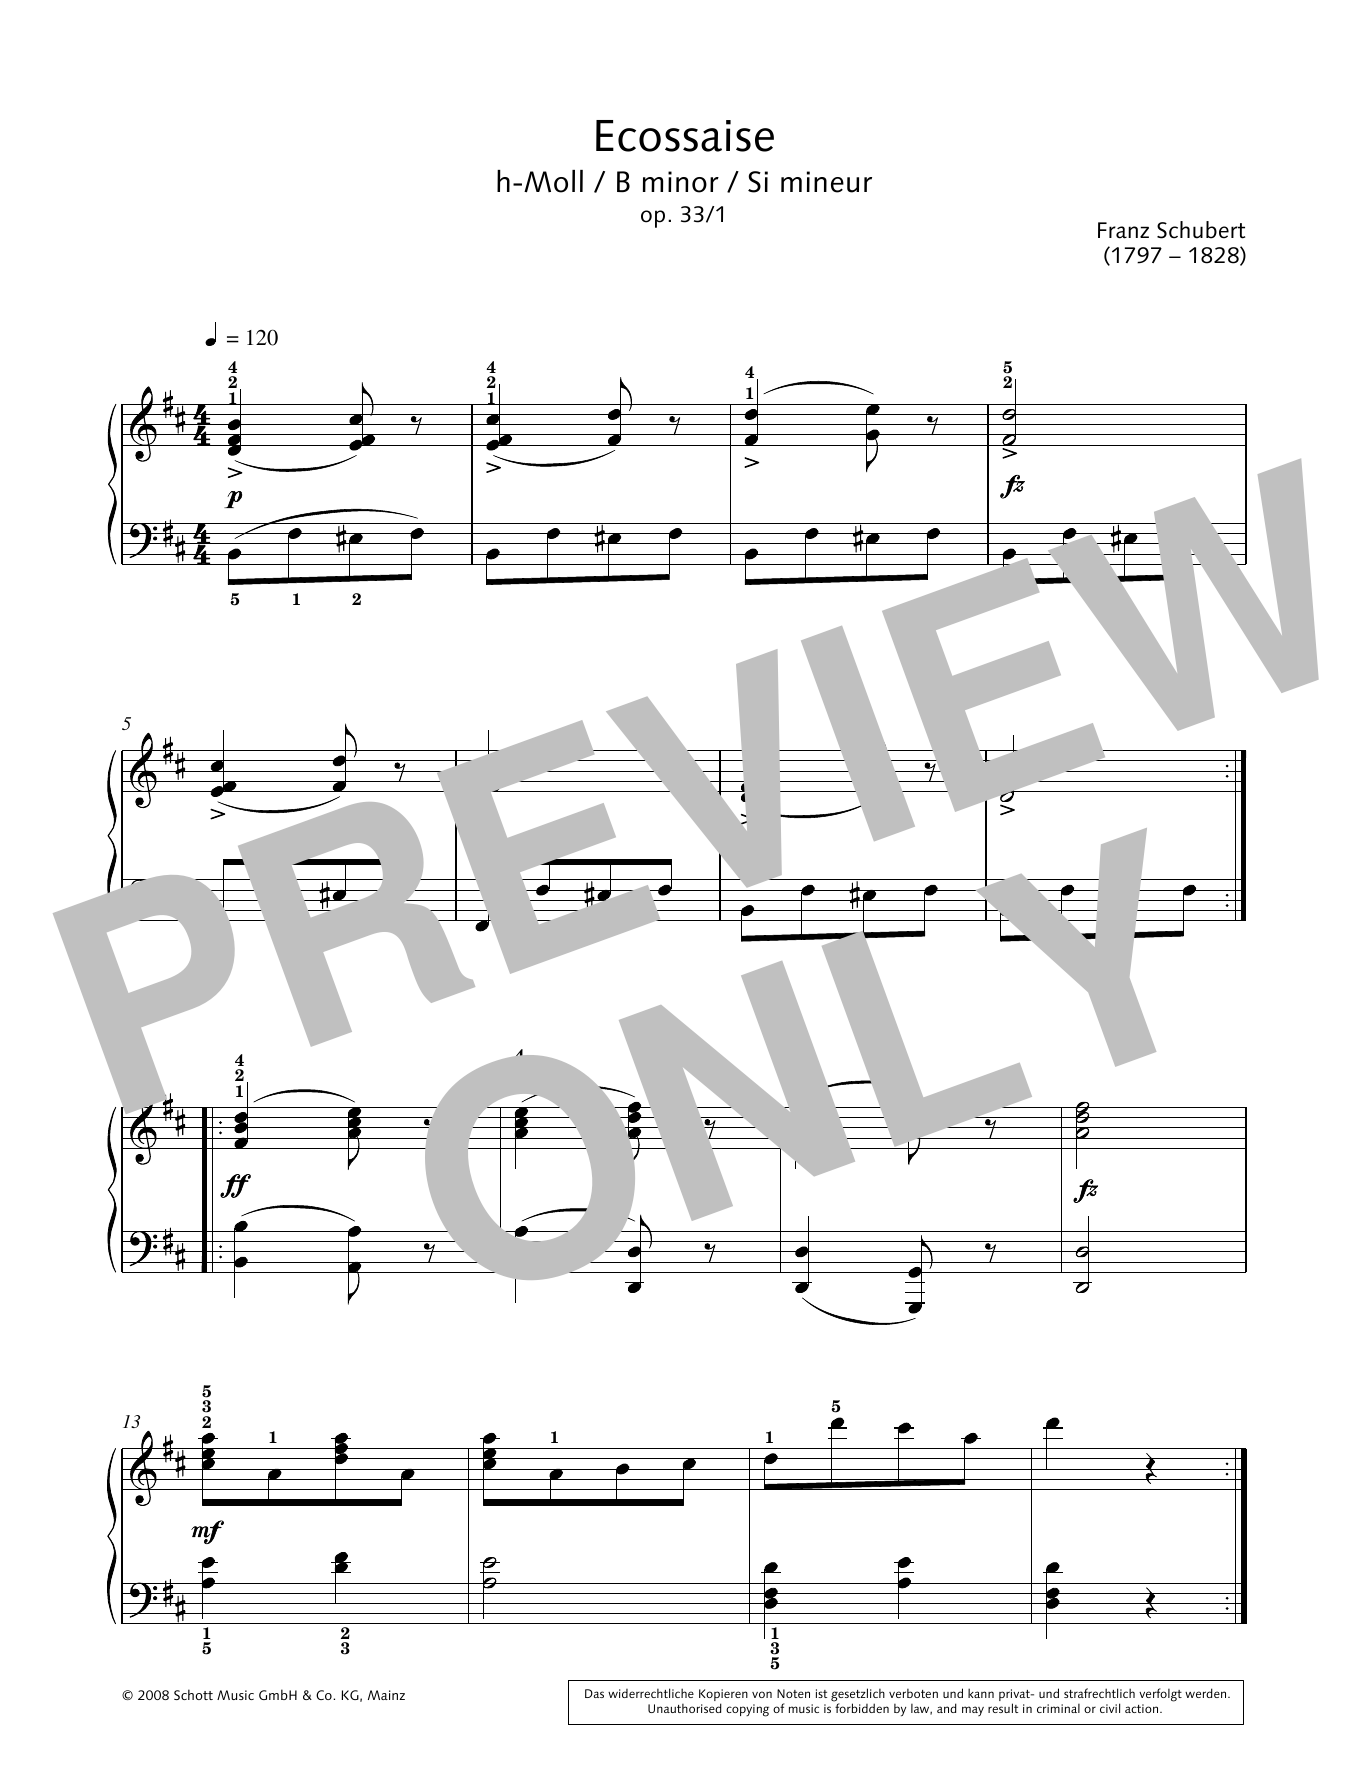 Download Franz Schubert Ecossaise in B minor Sheet Music